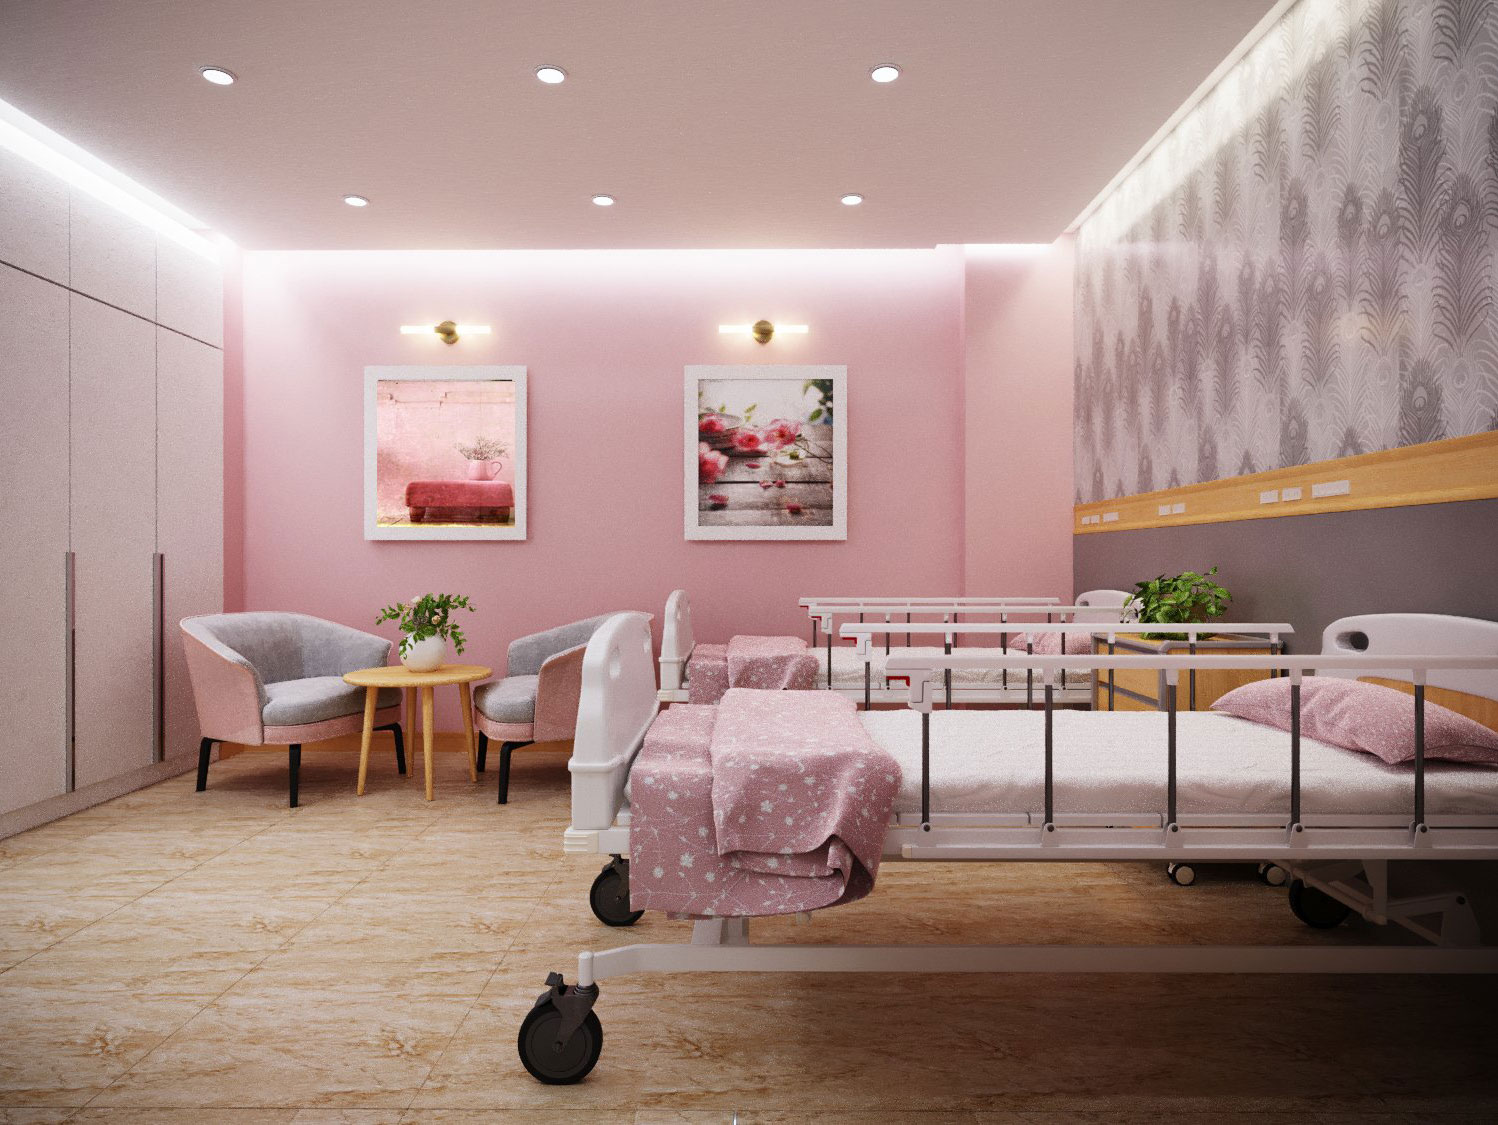 Bệnh viện Phụ Sản An Thịnh được xây dựng theo mô hình bệnh viện – khách sạn 5 sao với giường bệnh và hệ thống phòng khoa đạt chuẩn Quốc tế